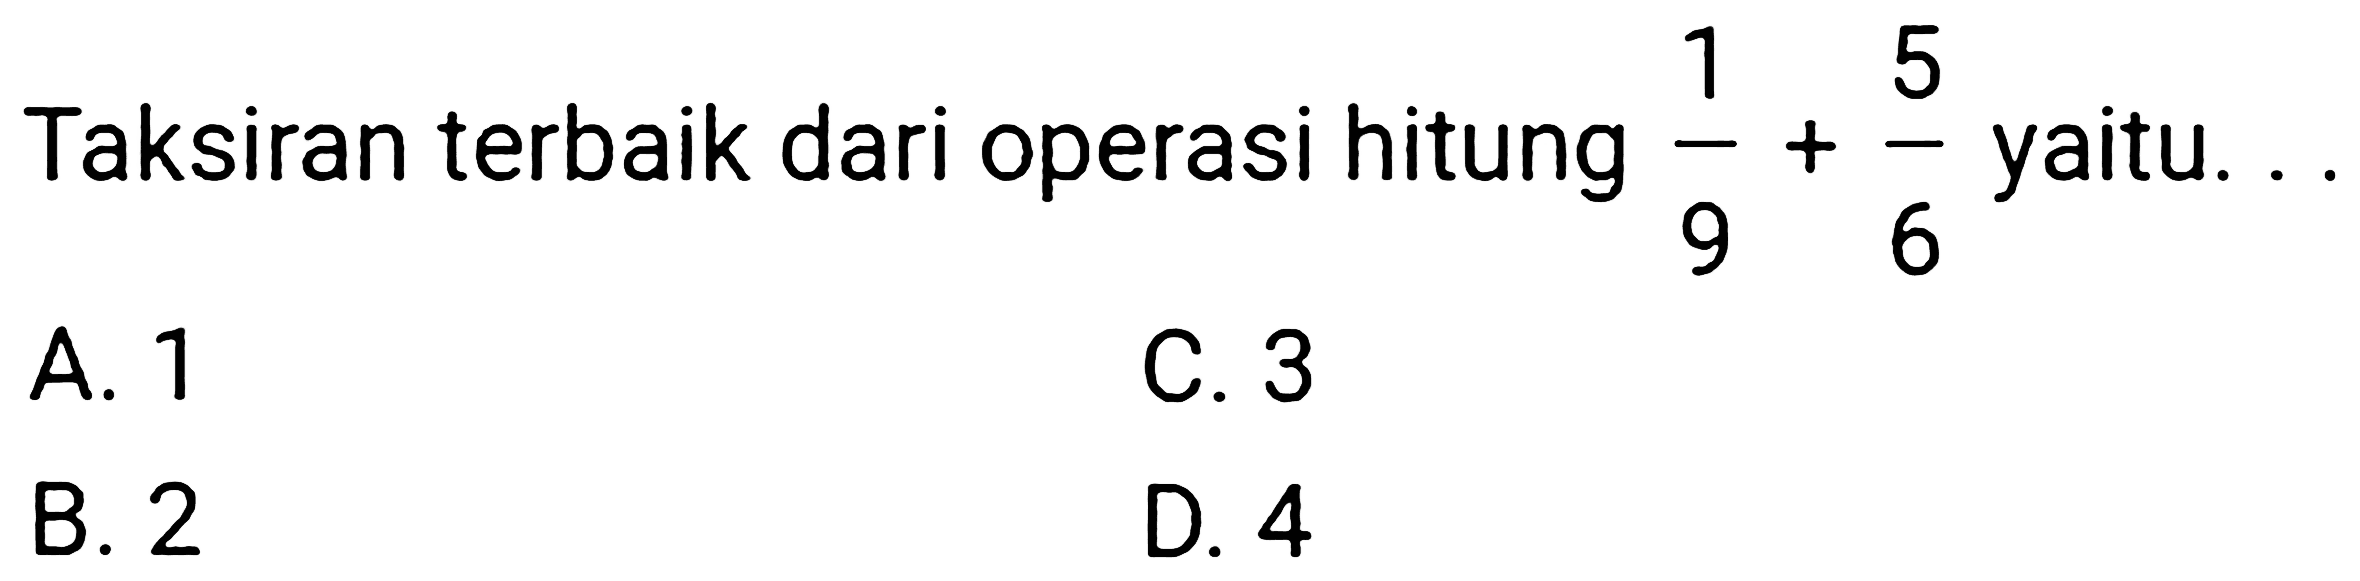 Taksiran terbaik dari operasi hitung  (1)/(9)+(5)/(6)  yaitu.
A. 1
C. 3
B. 2
D. 4